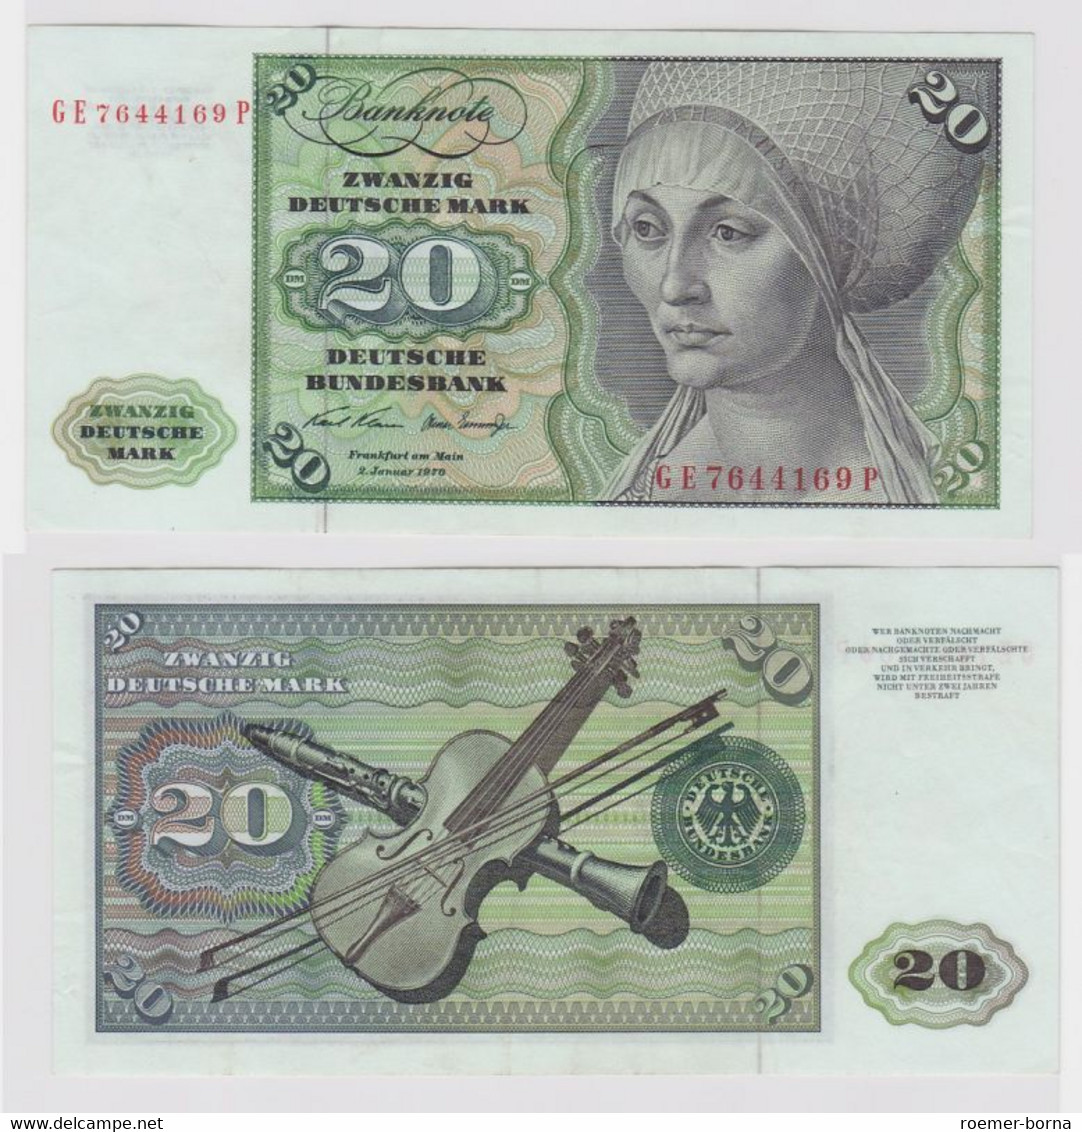 T148284 Banknote 20 DM Deutsche Mark Ro. 271b Schein 2.Jan. 1970 KN GE 7644169 P - 20 Deutsche Mark